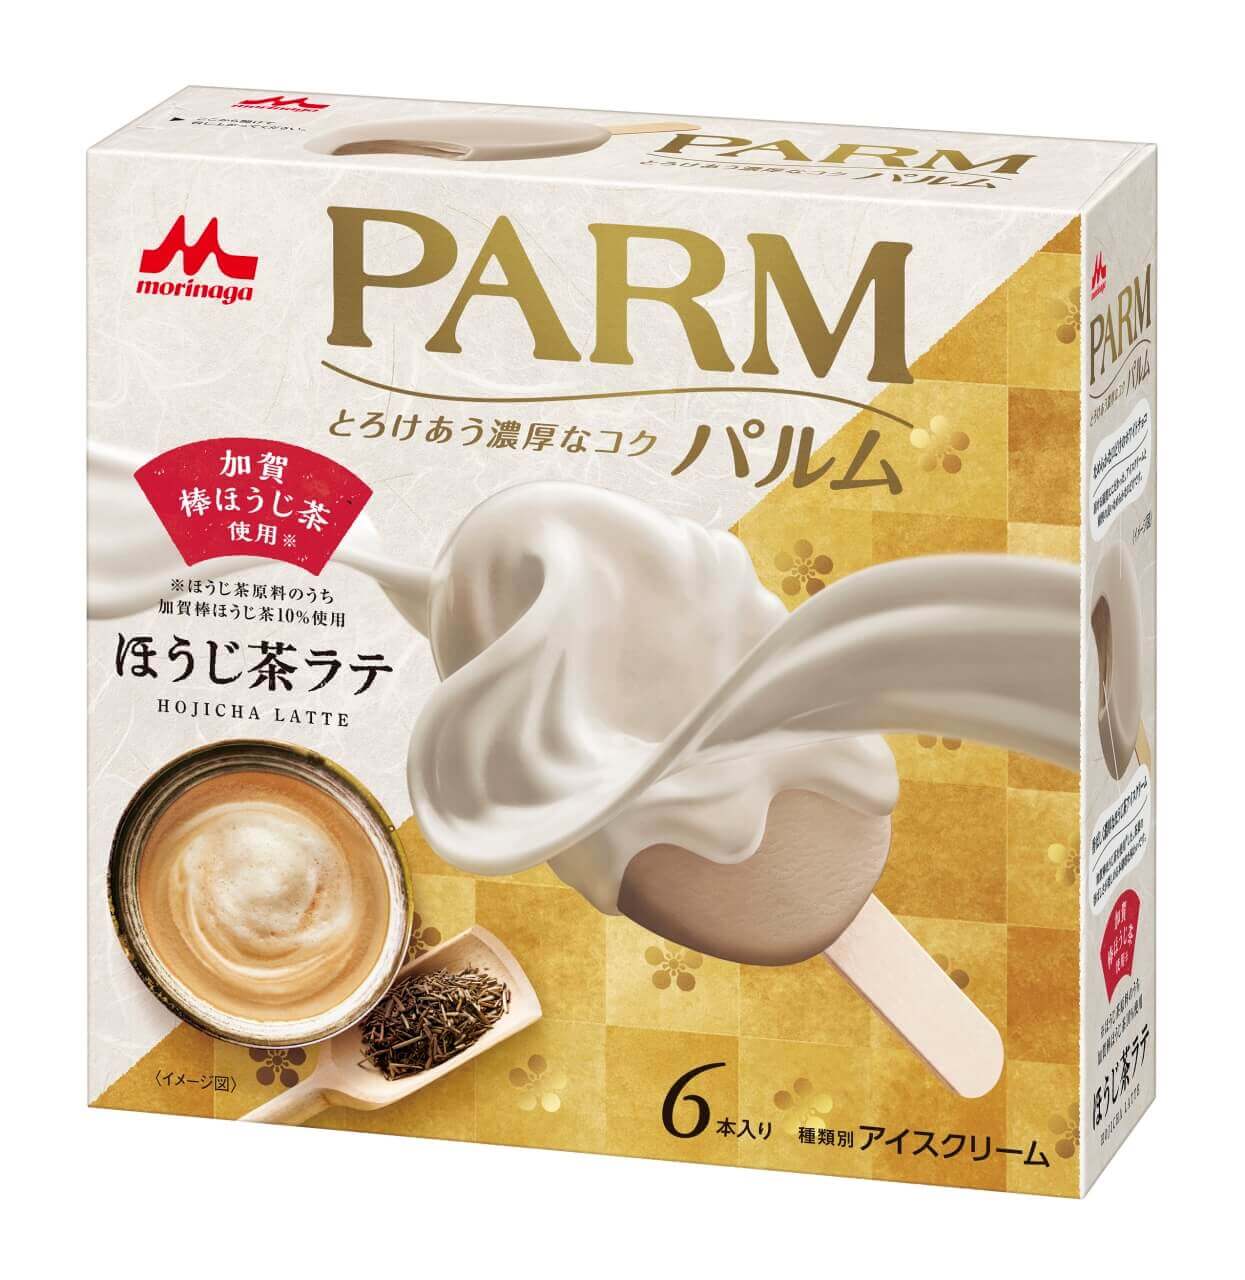 『PARM(パルム) ほうじ茶ラテ(6本入り)』